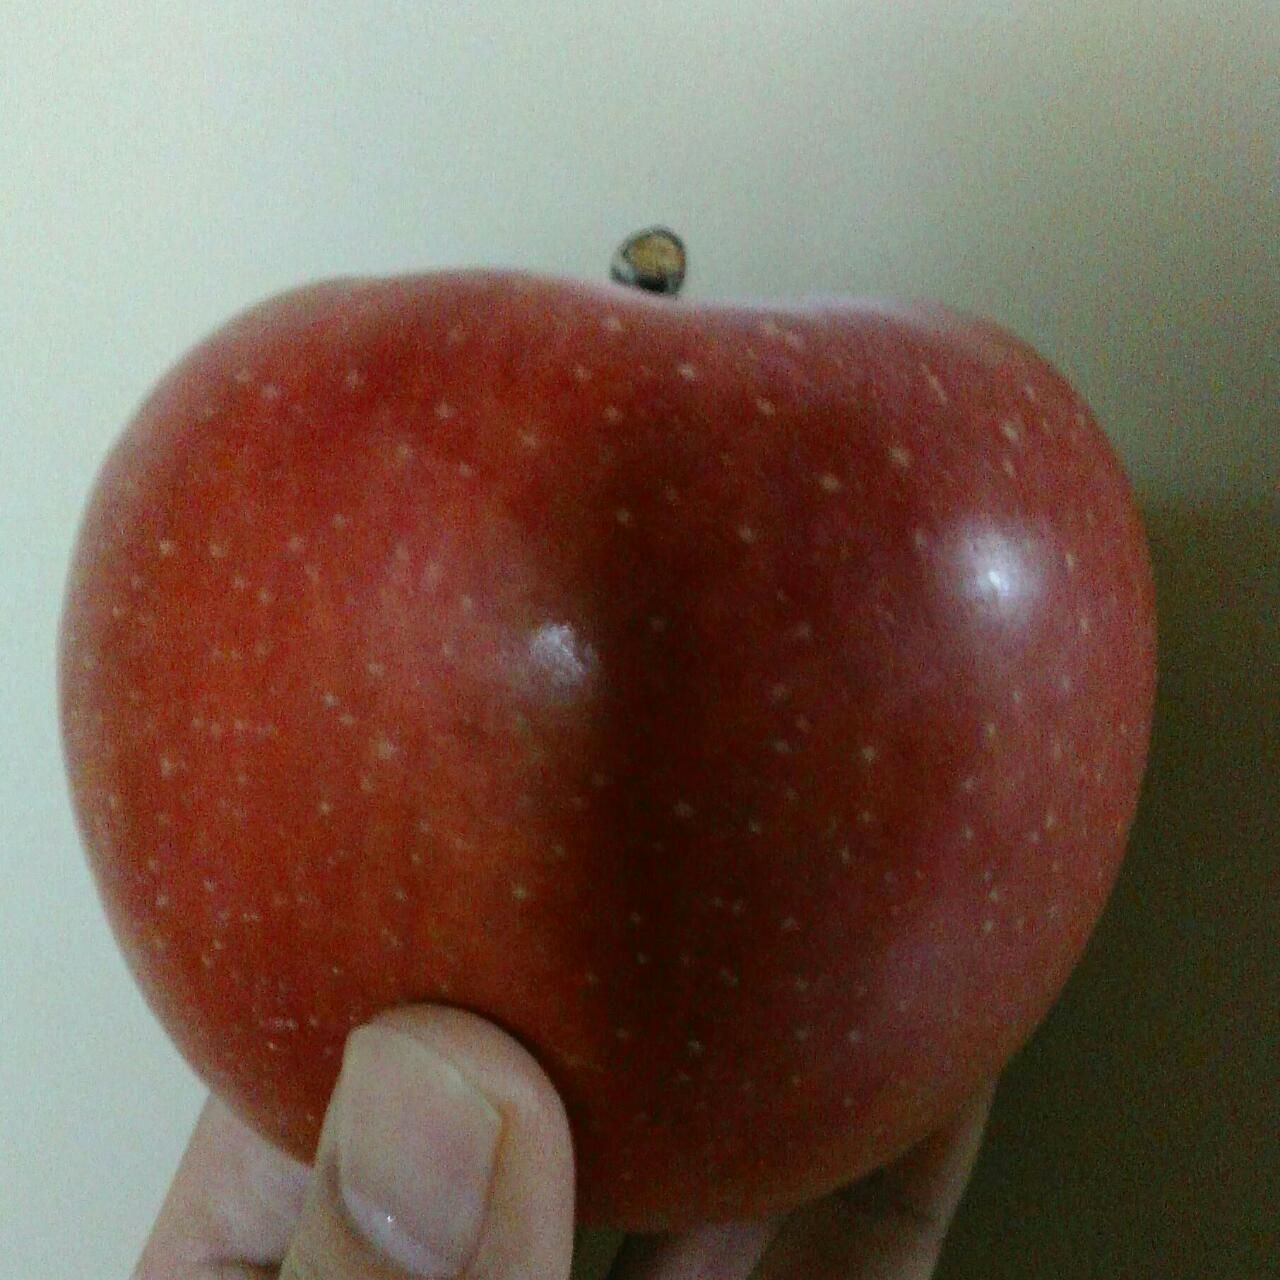 リンゴ 1 個 の カロリー は